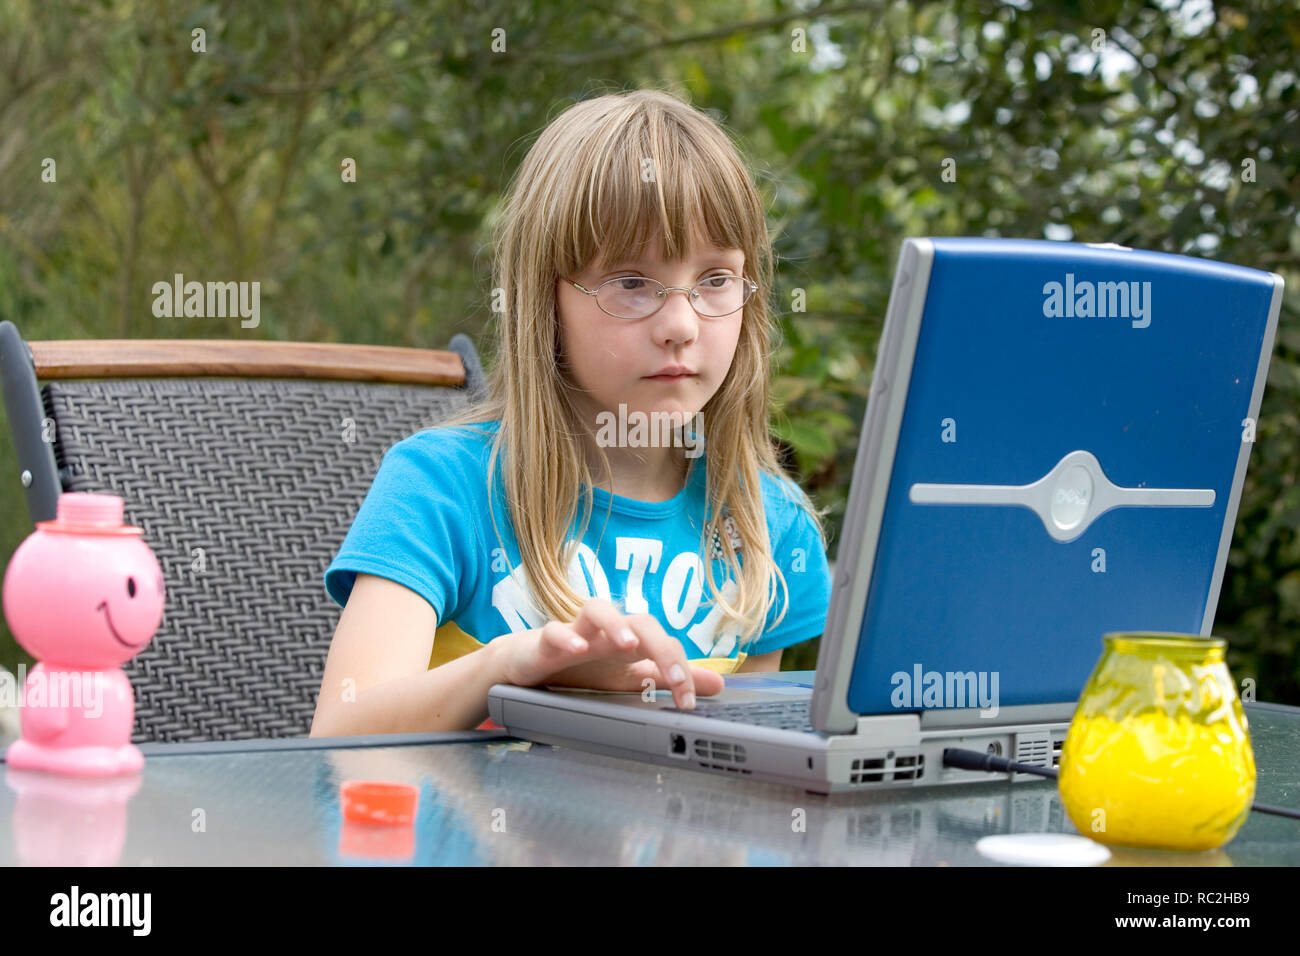 Los jóvenes caucásicos infantil femenina en los 2000s, jugando con un ordenador portátil en el jardín en verano. Foto de stock